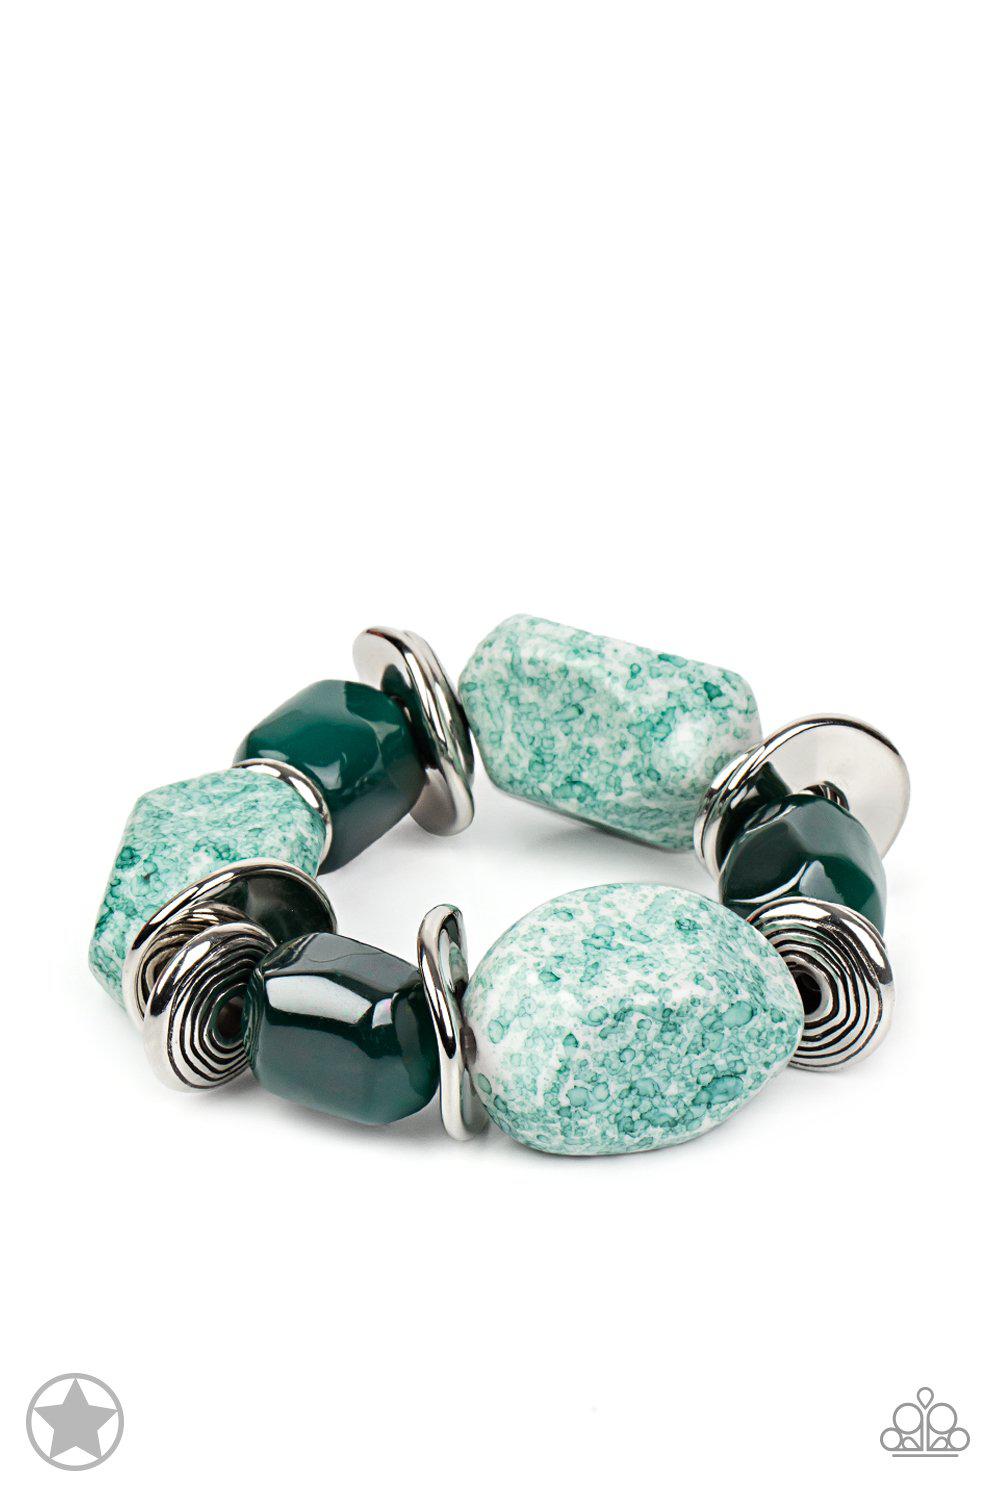 Glaze of Glory Blue Chunky Bead Stretch Bracelet - Paparazzi Accessories - lightbox -CarasShop.com - $5 Jewelry by Cara Jewels